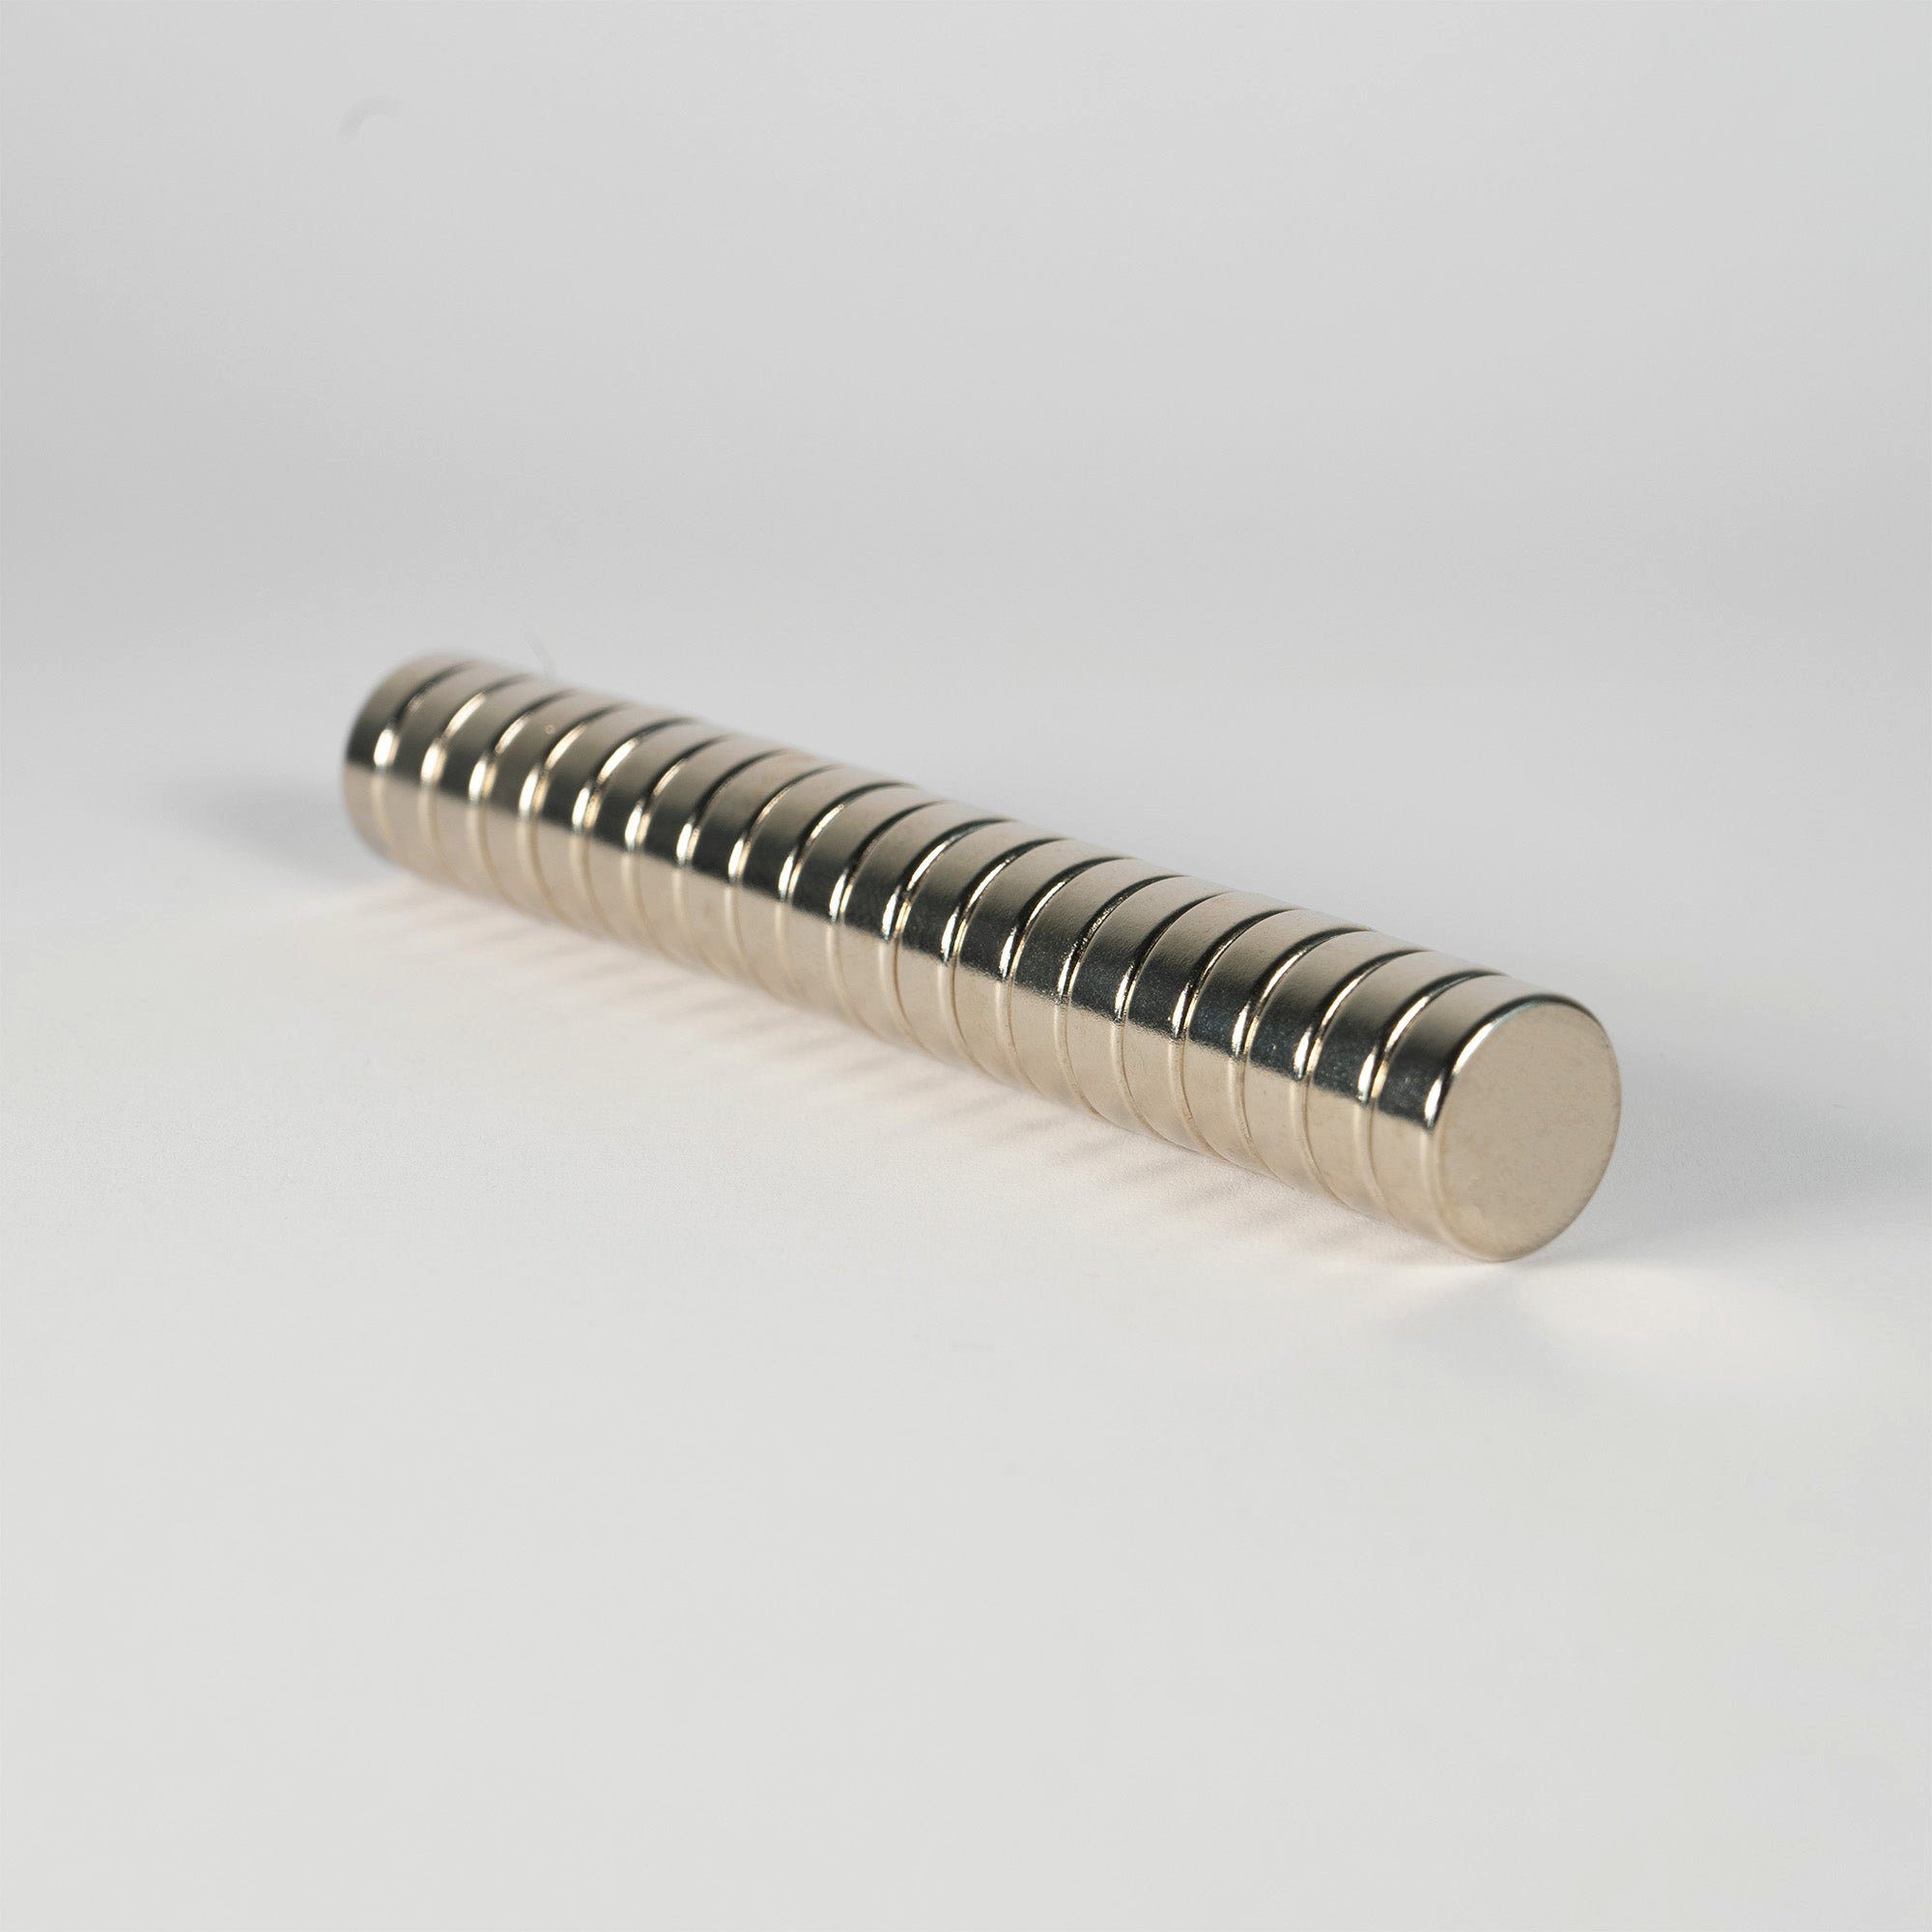 Neodym Magnet Scheibe 8x0,75mm Selbstklebend